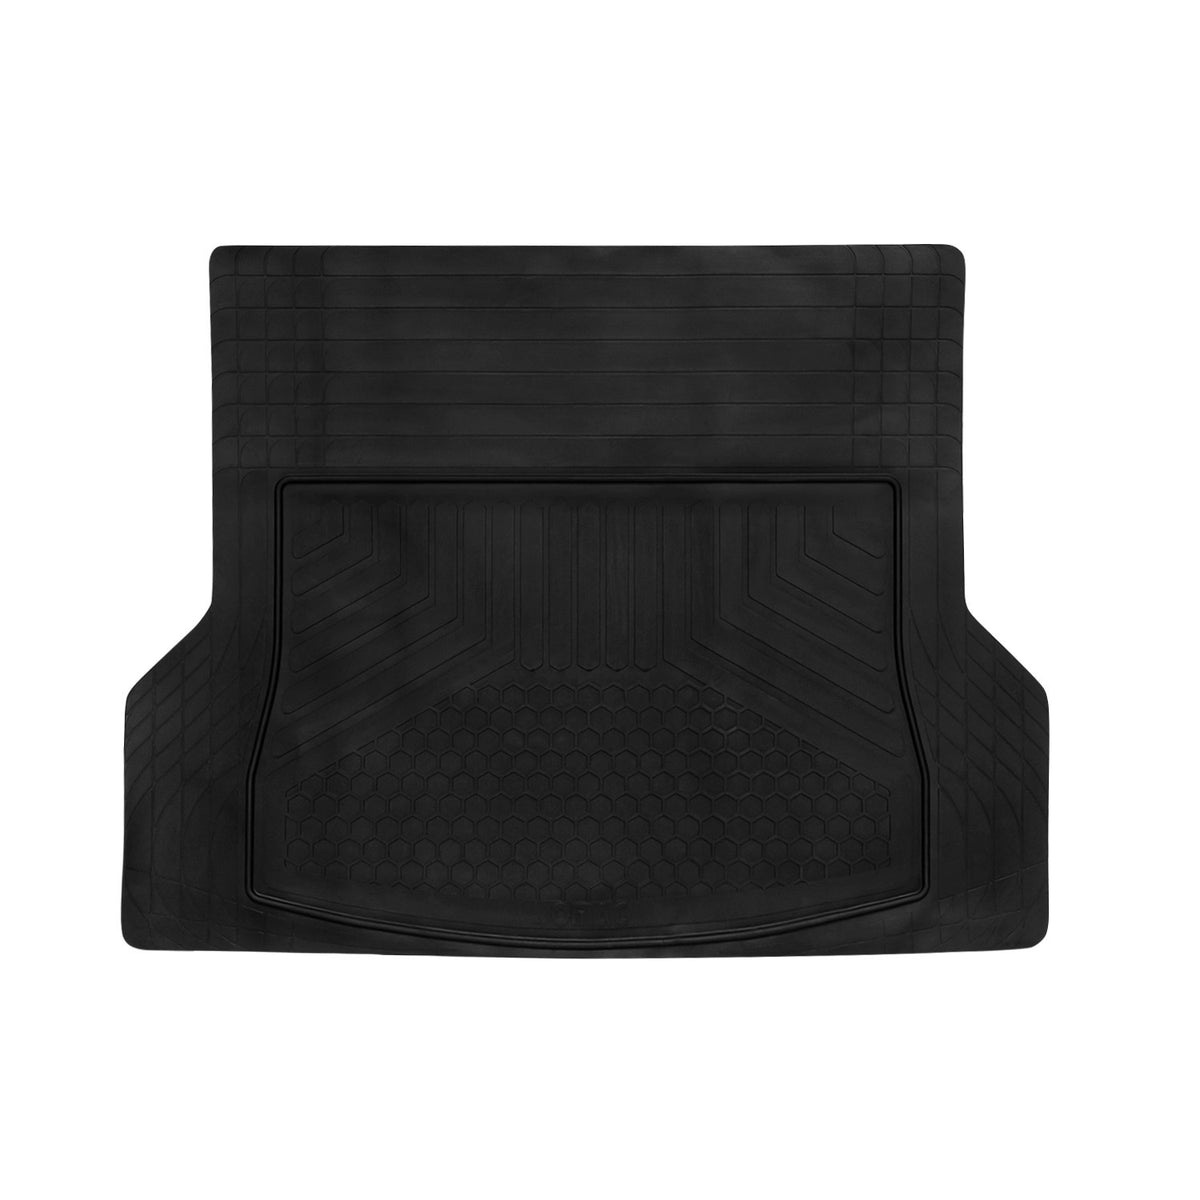 Tapis de coffre pour Audi A8 antidérapant et toutes saisons Noir 1Pcs